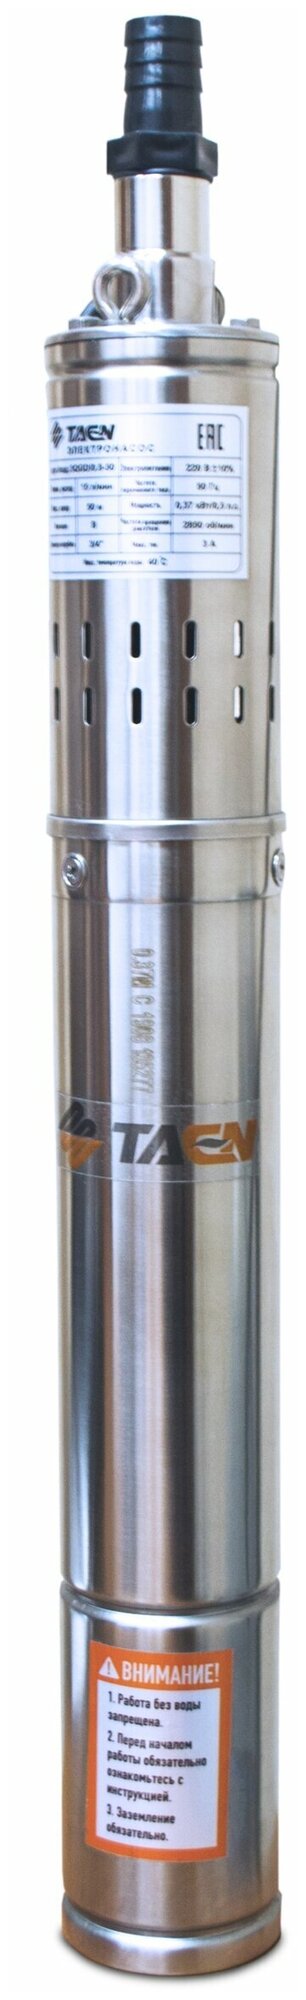 Скважинный насос TAEN винтовой 4QGD/1.2-100 (4", 0,75 кВт, ПУ встр.)